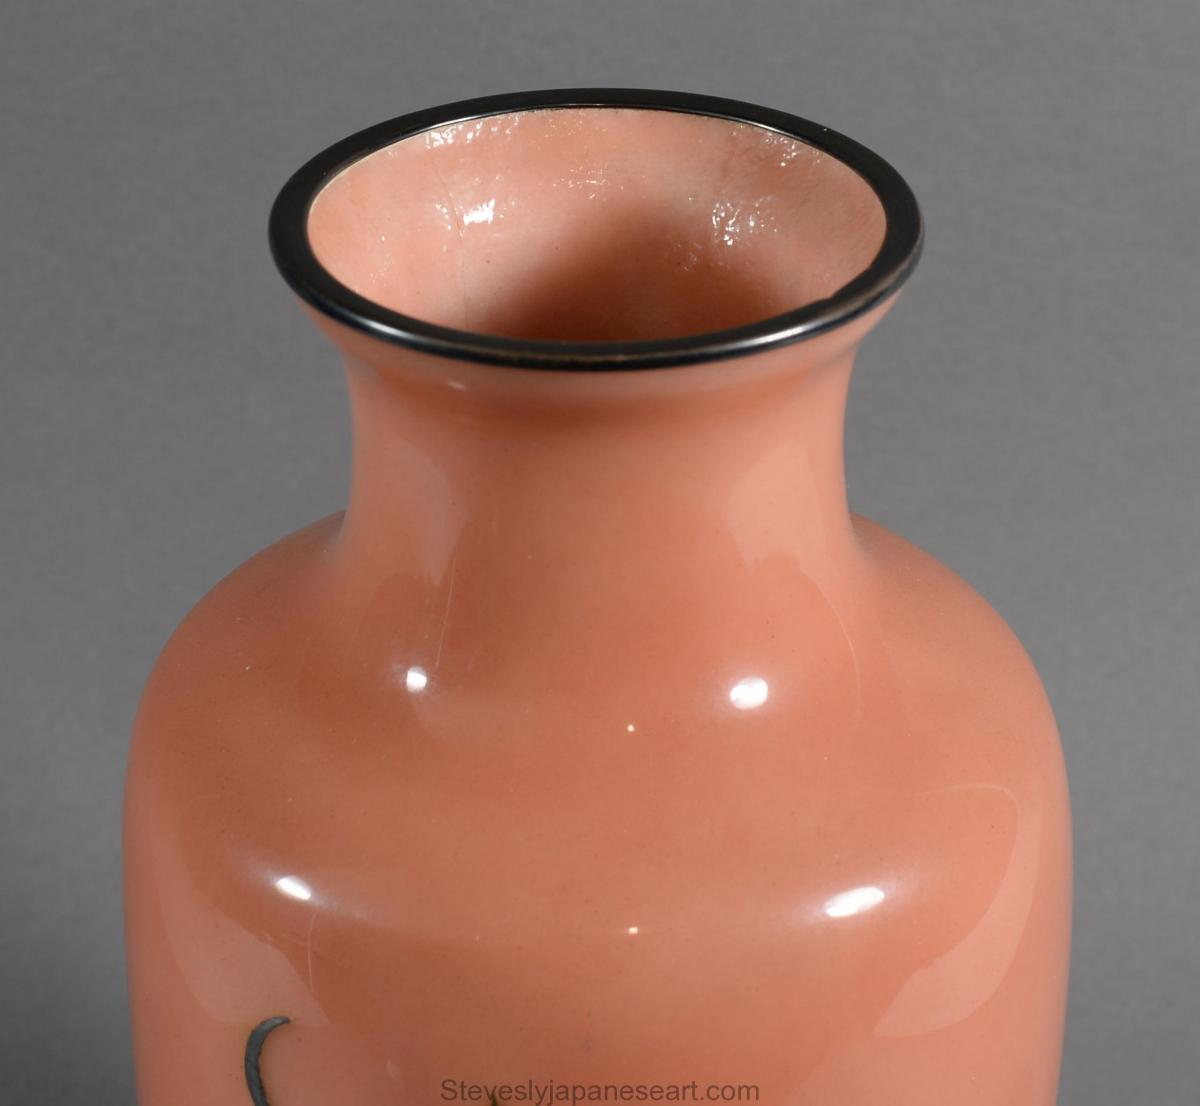 Japanese Cloisonne Enamel Vase By Ando Company